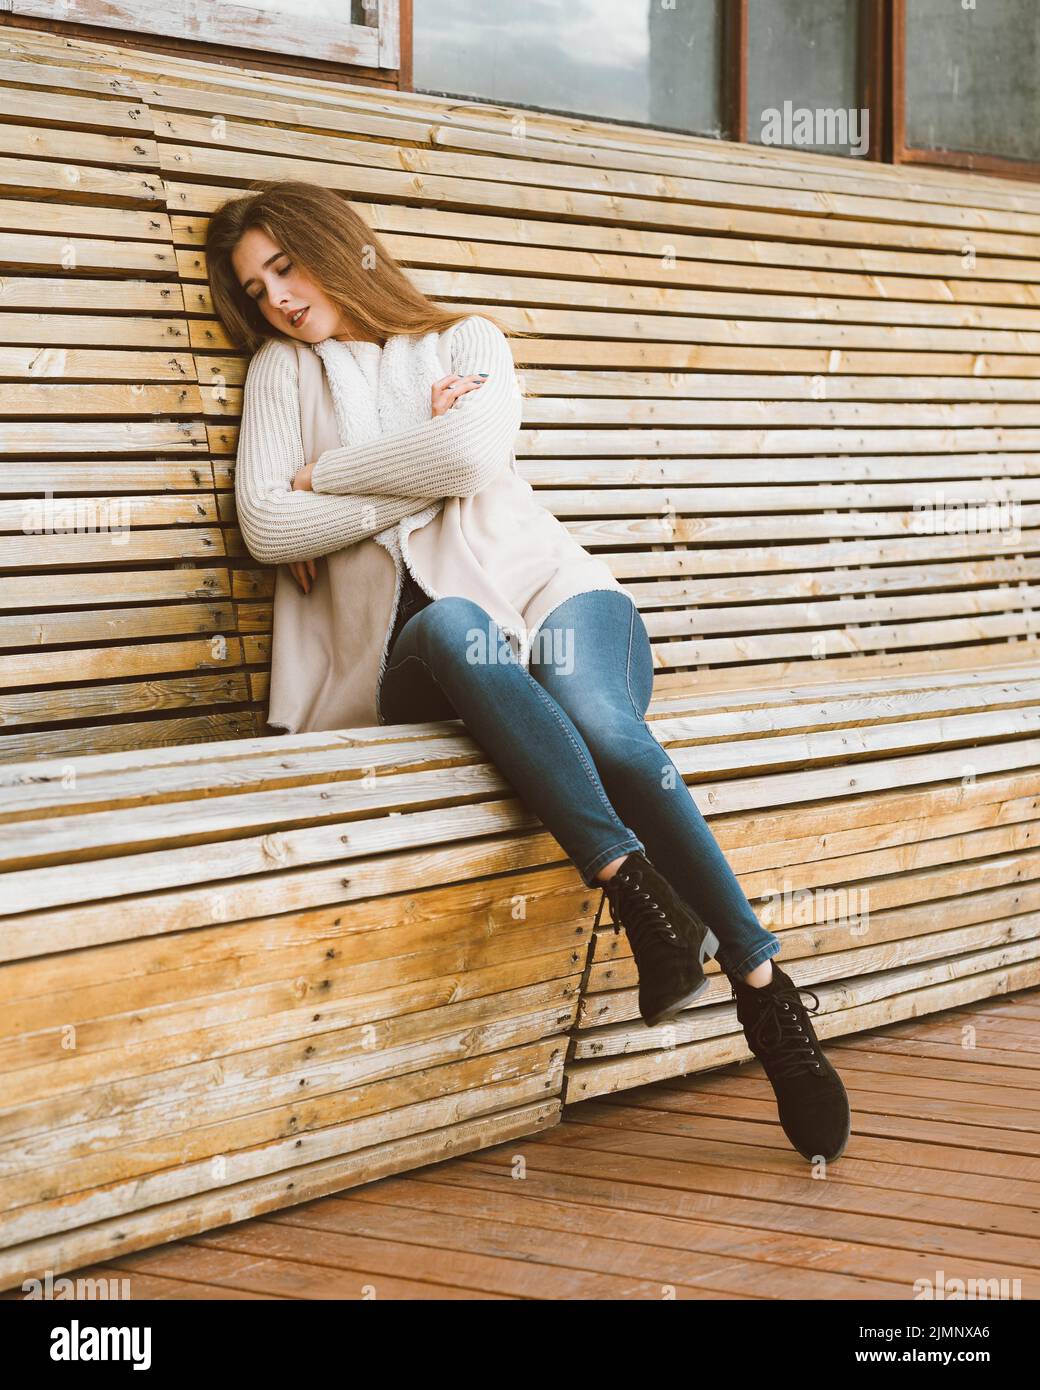 Bella giovane ragazza con lunghi capelli castani siede su una panca di legno fatta di tavole e riposi, dorme o dozes in aria fresca. Esterno p Foto Stock